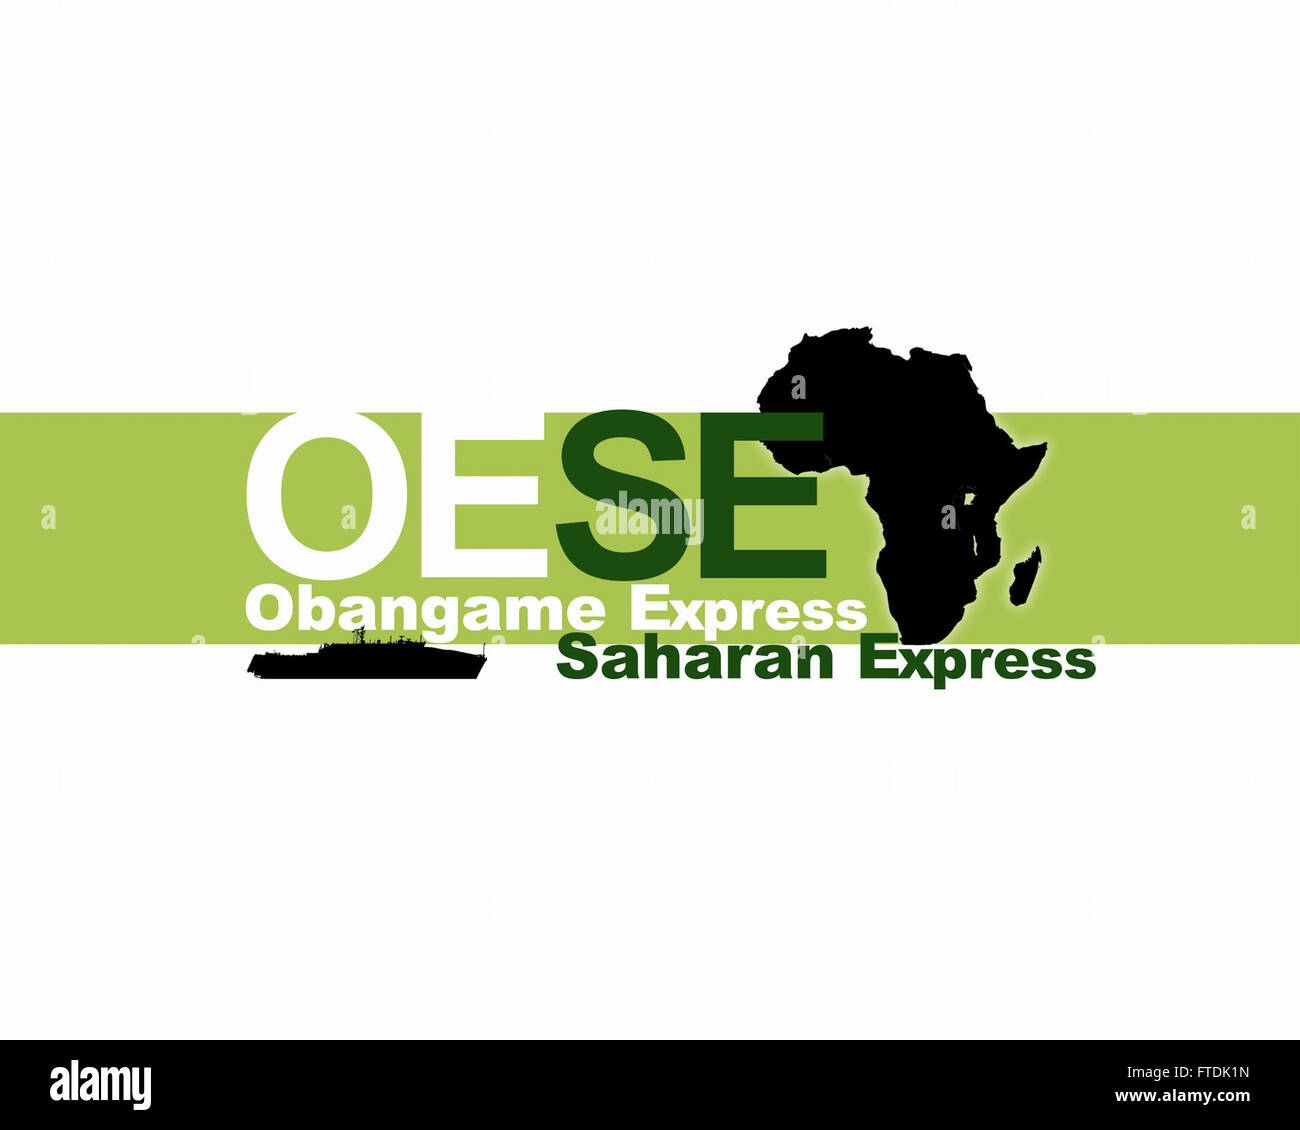 Esercizio Obangame/Saharan Express è uno dei tre African Regional Express series esercizi facilitata annualmente dagli Stati Uniti Forze Navali/Europa-africa U.S. Sesta flotta (CNE-CNA/C6F). L'obiettivo perseguito è quello di aumentare la cooperazione regionale, dominio marittimo consapevolezza (MDA), la condivisione delle informazioni tra le operazioni marittime centri (MOCs) e migliorare l'interoperabilità tra le forze che partecipano al fine di migliorare la sicurezza marittima e la stabilità economica regionale. La porzione in corso prove di squadre di imbarco' abilità per condotta di interdizione marittima operazioni (MIO) per rilevare la presenza di attività illecite un Foto Stock